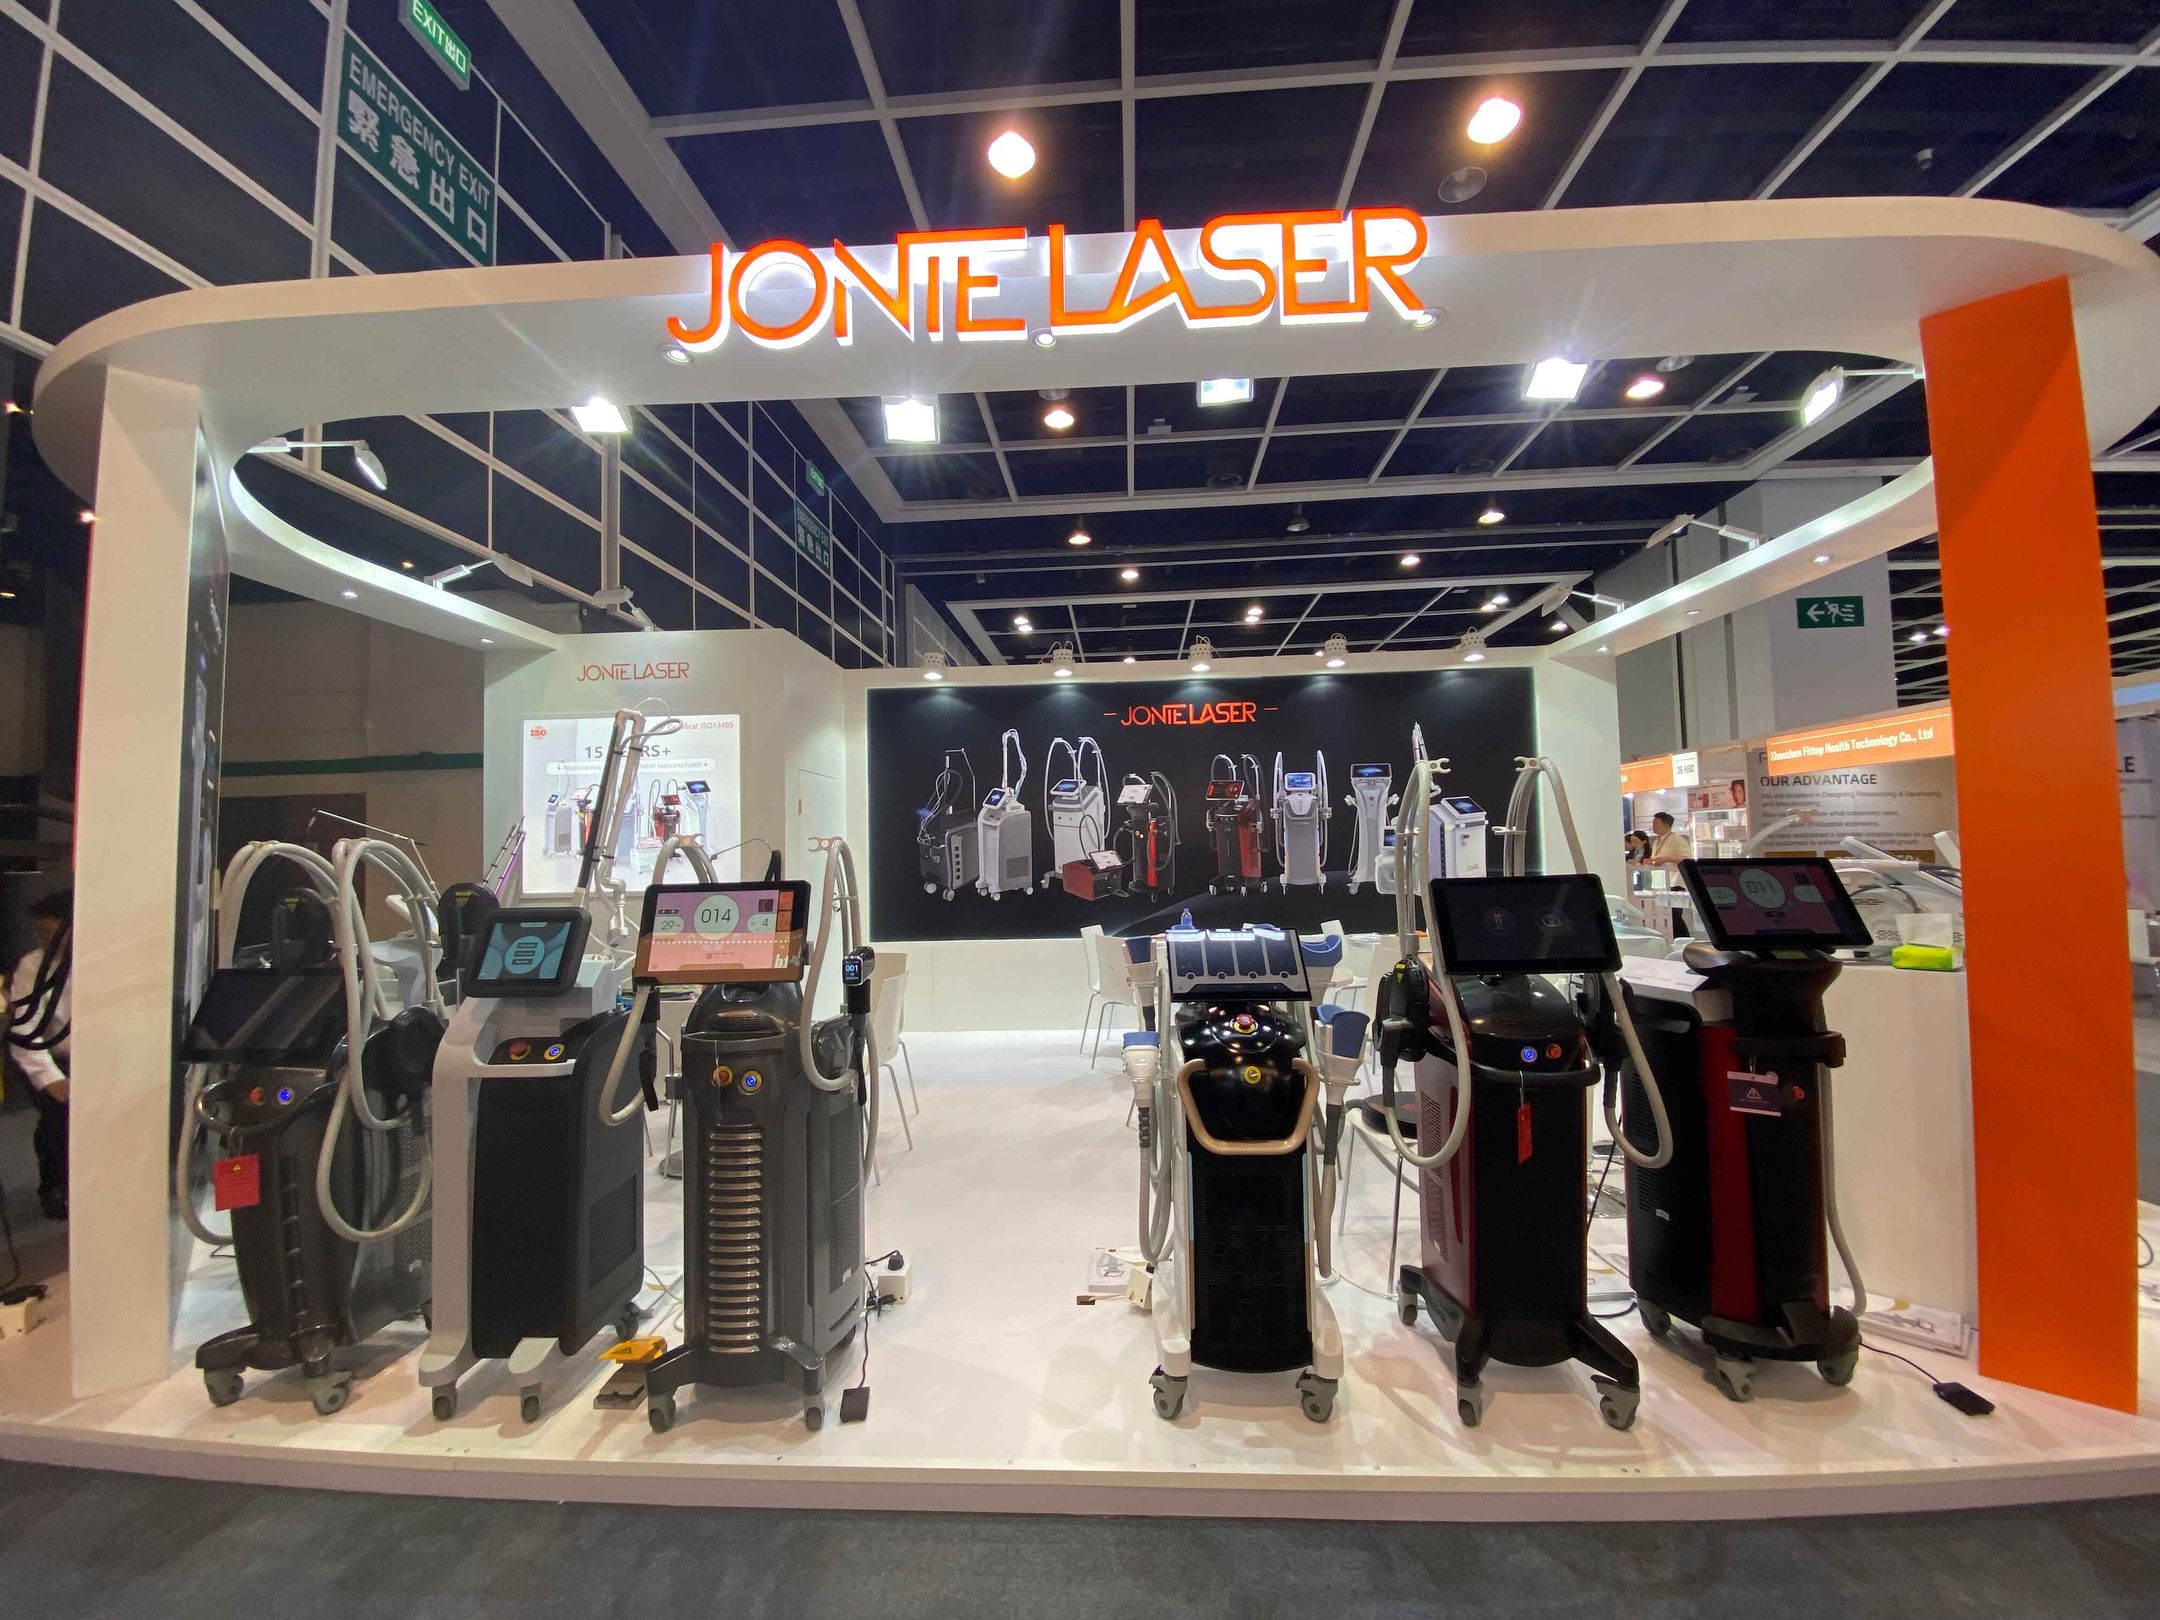 Jontelaser booth at Cosmoprof Asia